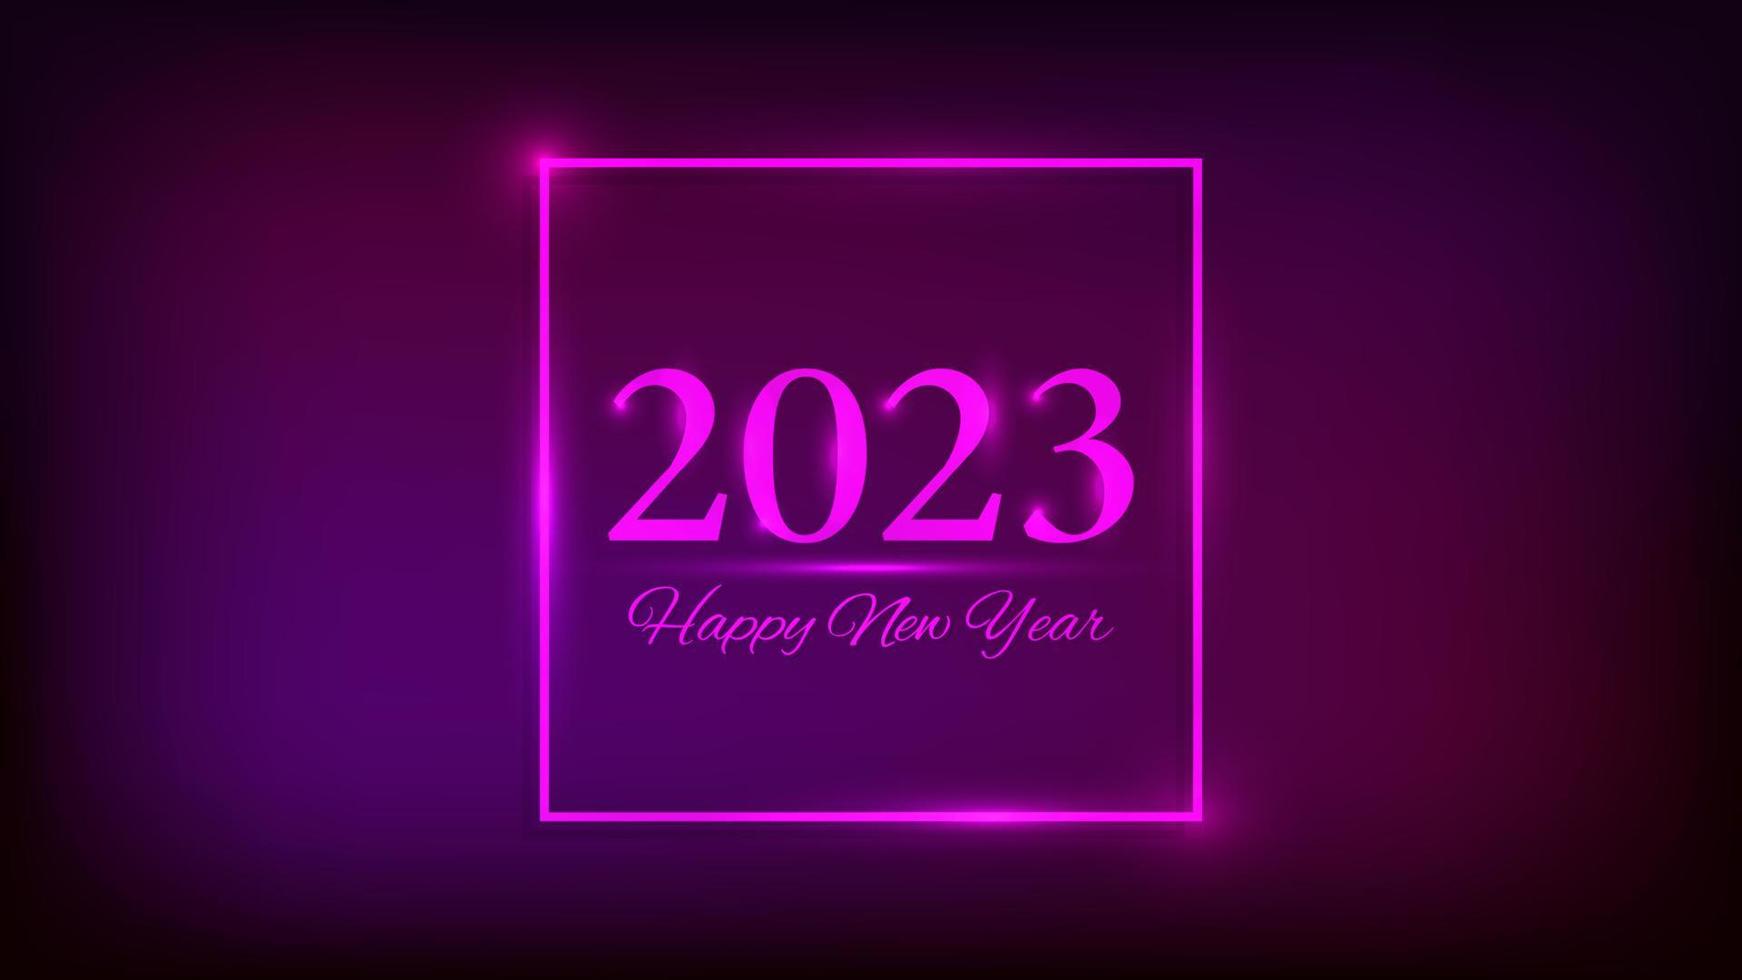 Bonne année 2023 fond néon. cadre carré néon avec effets brillants pour carte de voeux, flyers ou affiches de vacances de noël. illustration vectorielle vecteur